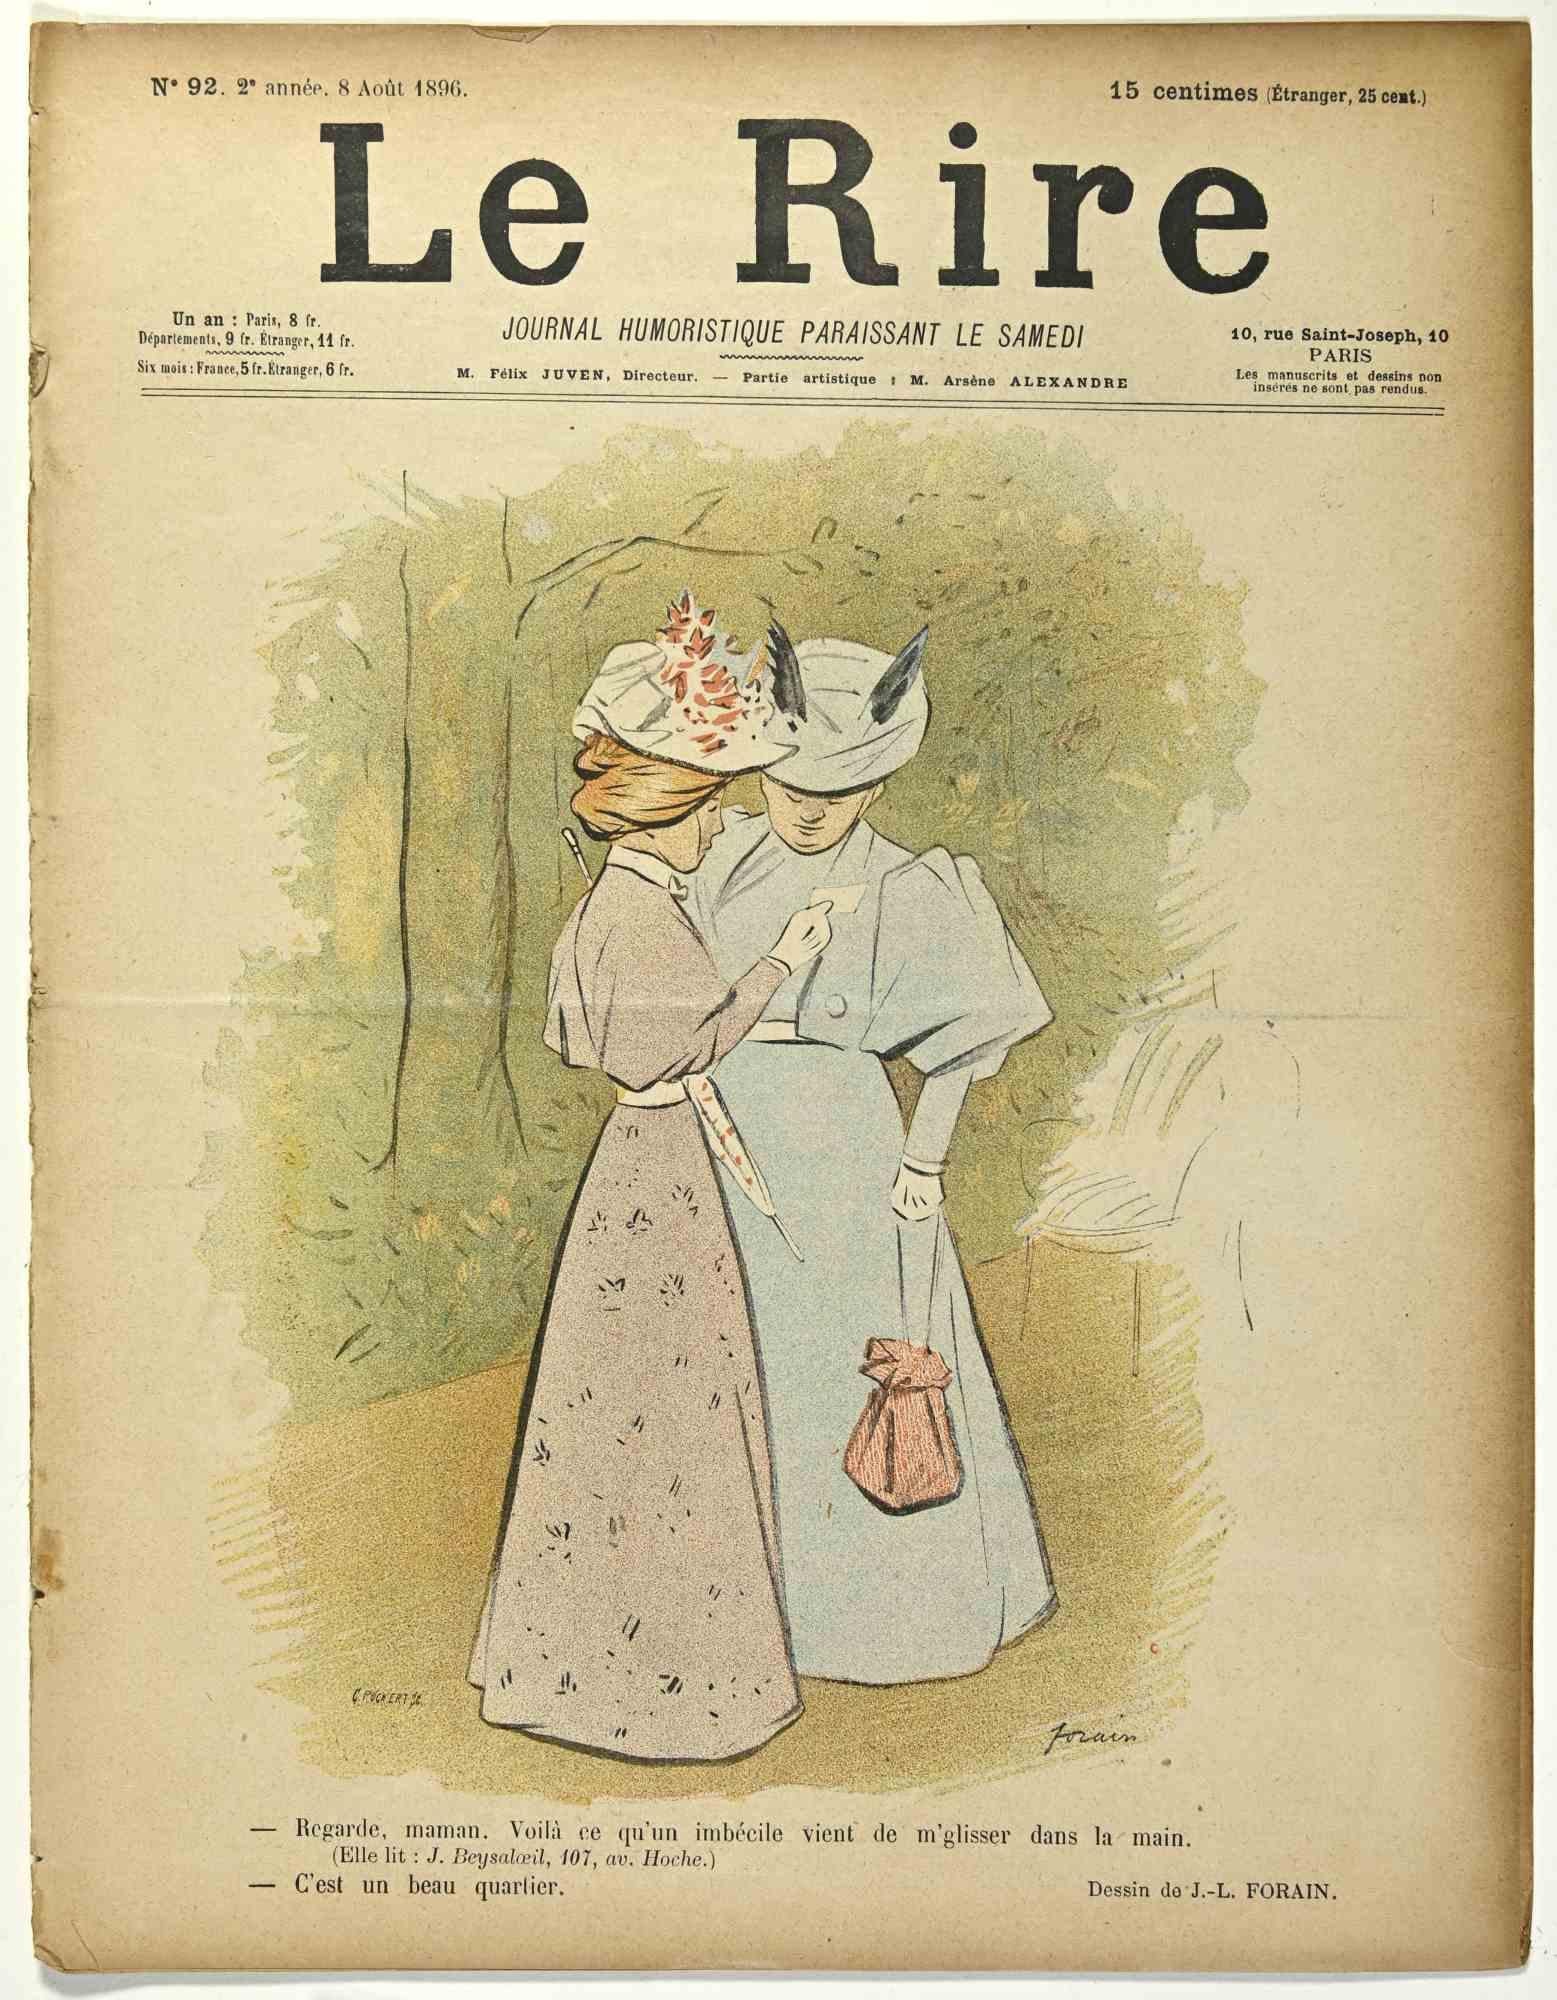 Le Rire est une revue humoristique estampillée du mois d'août 1896 dessinée par Jean Luis Forain (1852-1931).

Bon état sur un papier jauni, à l'exception d'un peu de papier déchiré dans la marge gauche.

Tampon signé dans le coin inférieur